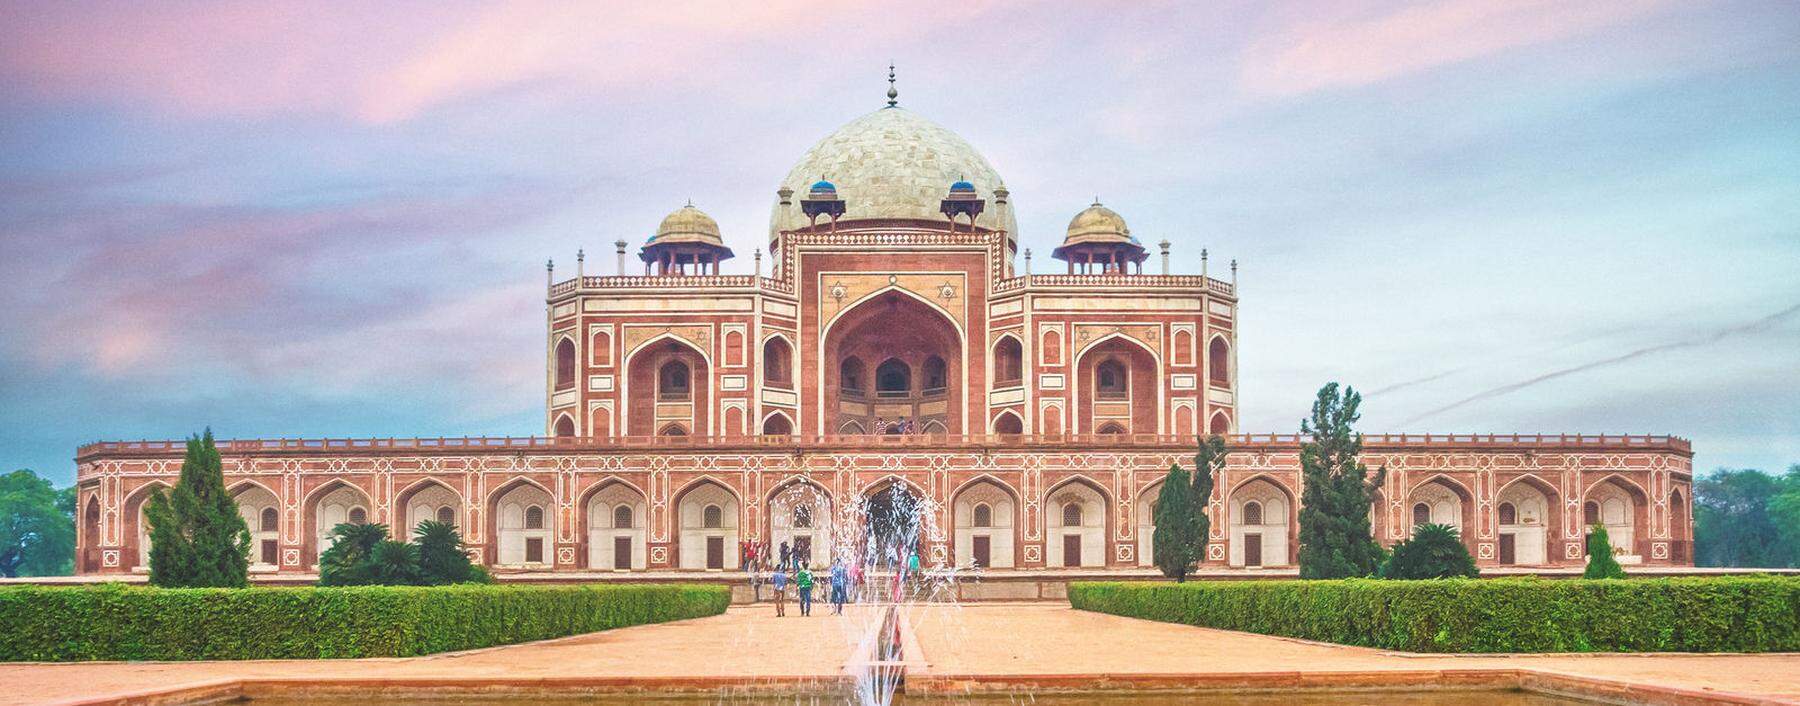 Das Mausoleum für den Großmogul Humayun in Neu-Delhi, erbaut um 1570 von seinem Sohn und Nachfolger, Akbar, wurde zur Inspiration für das Taj Mahal.